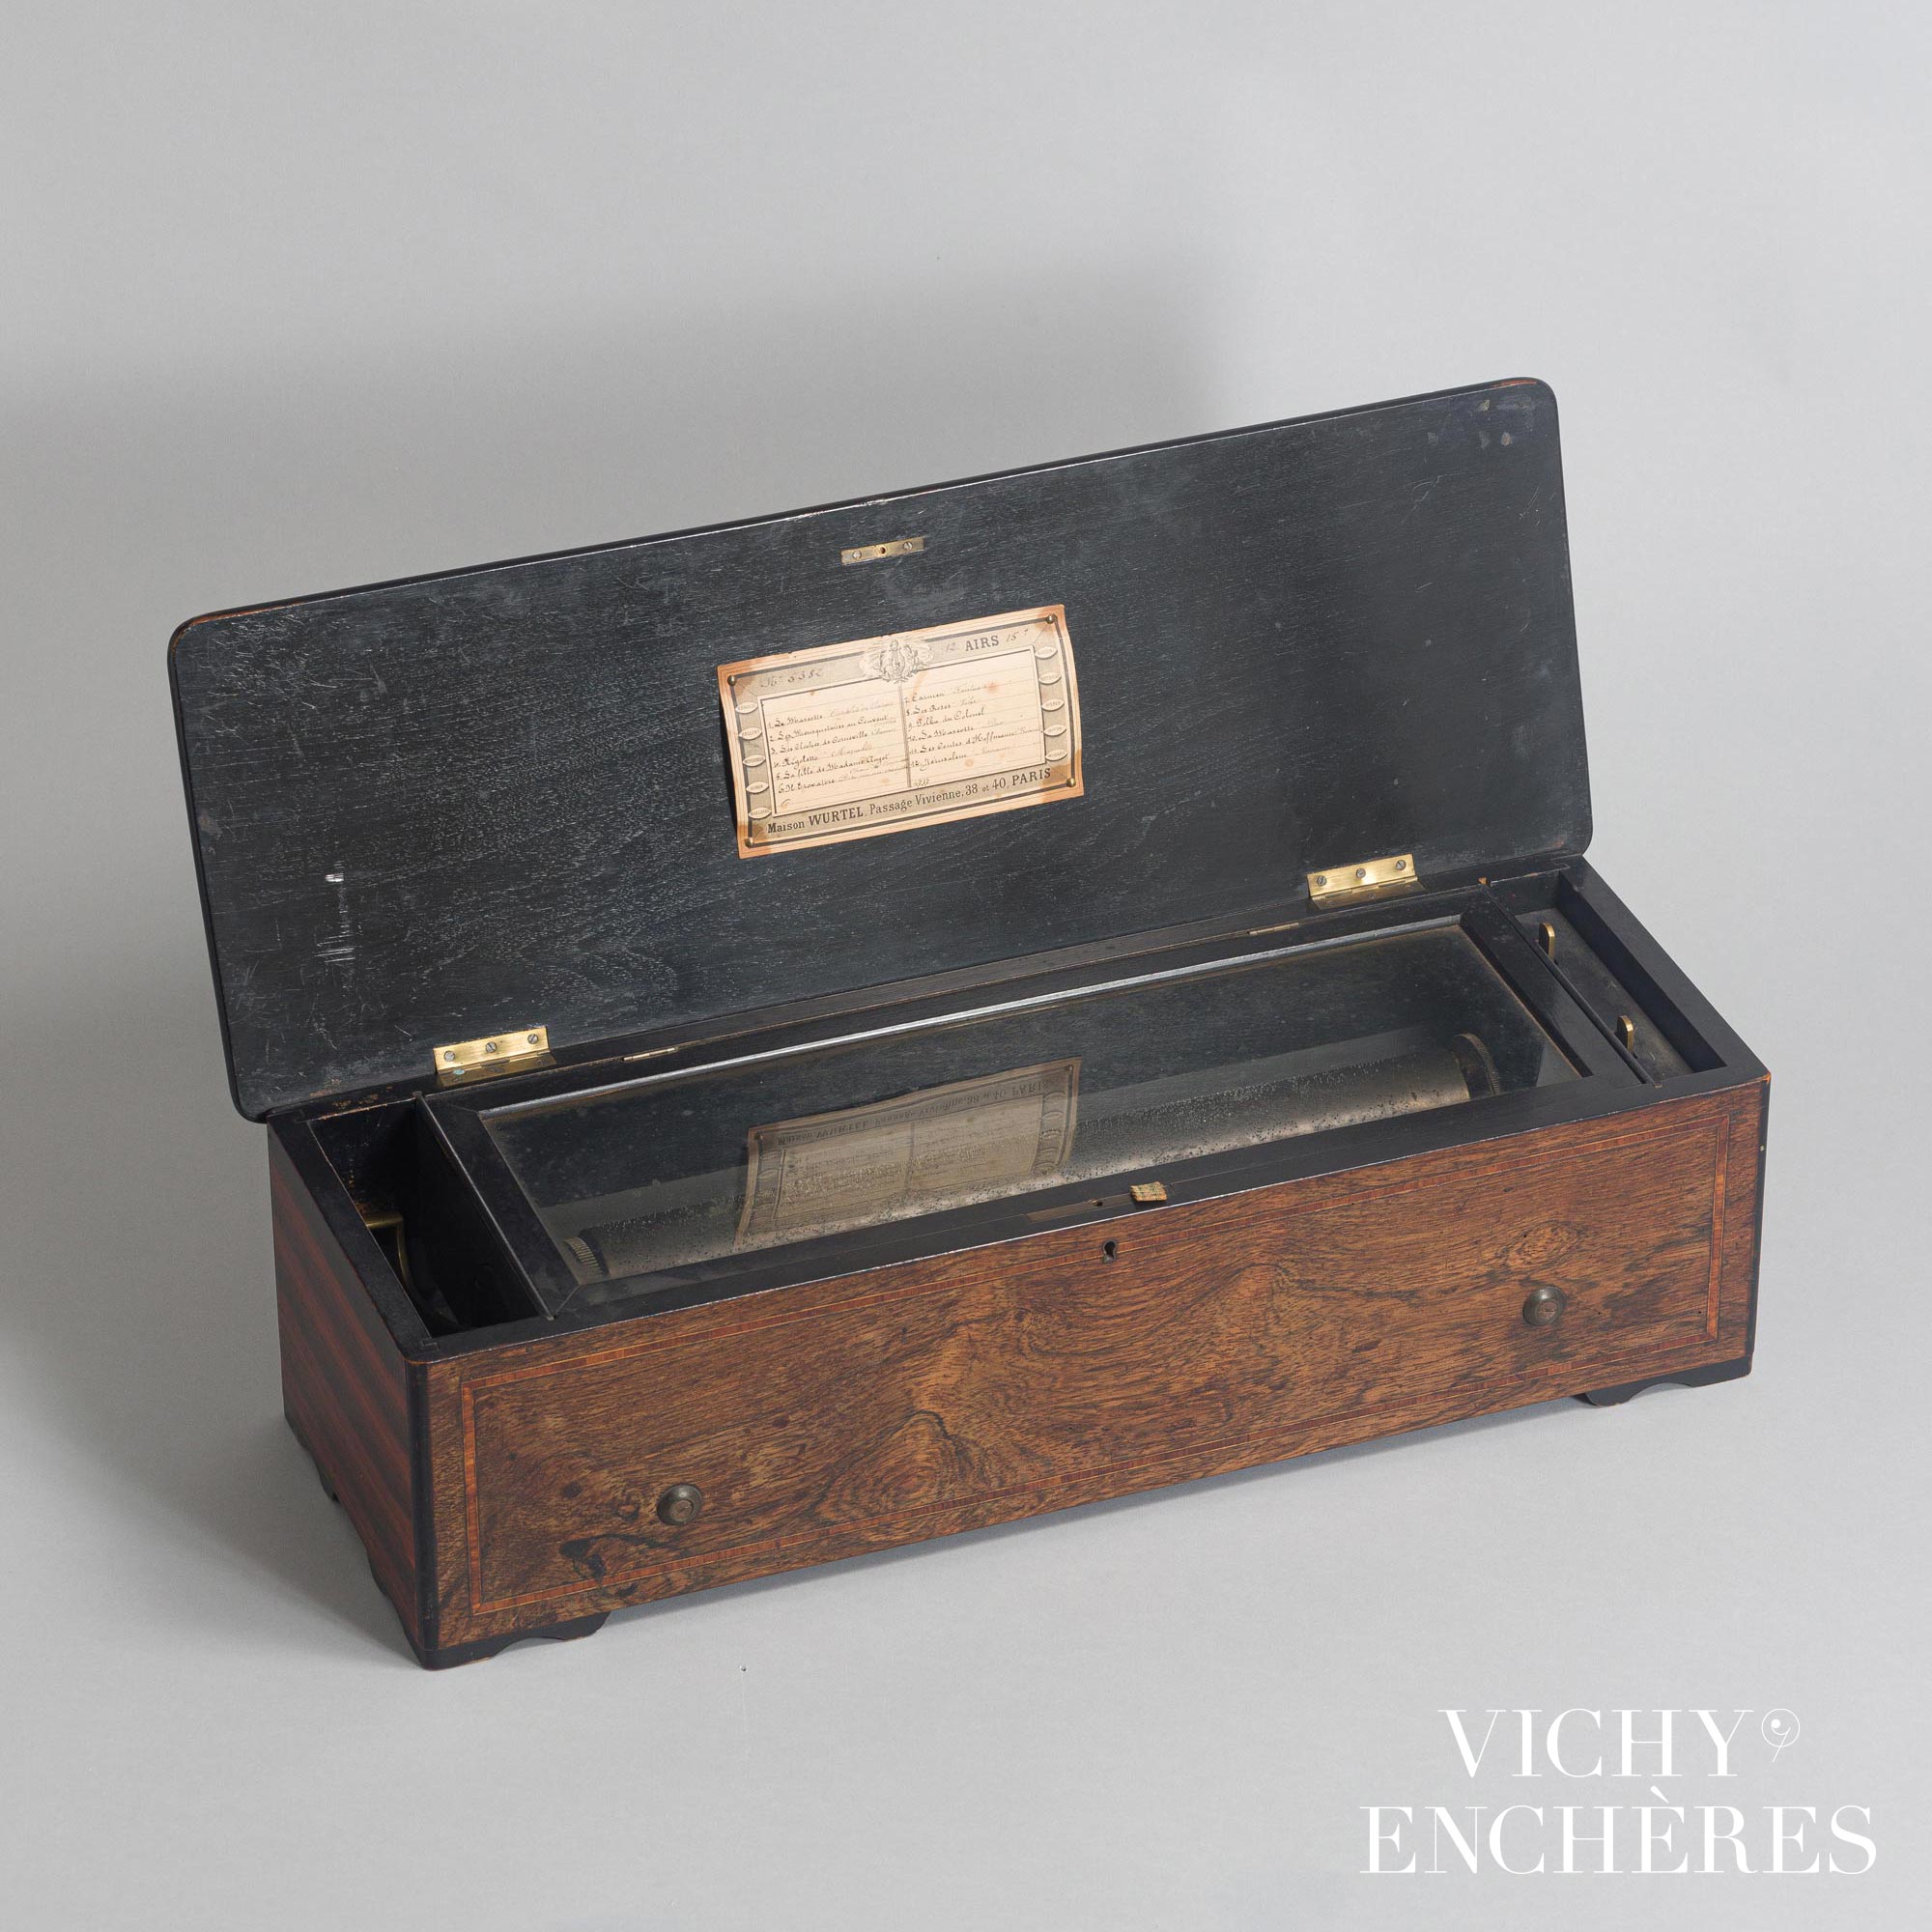 Archives des Instruments de musique à vent - Vichy Enchères